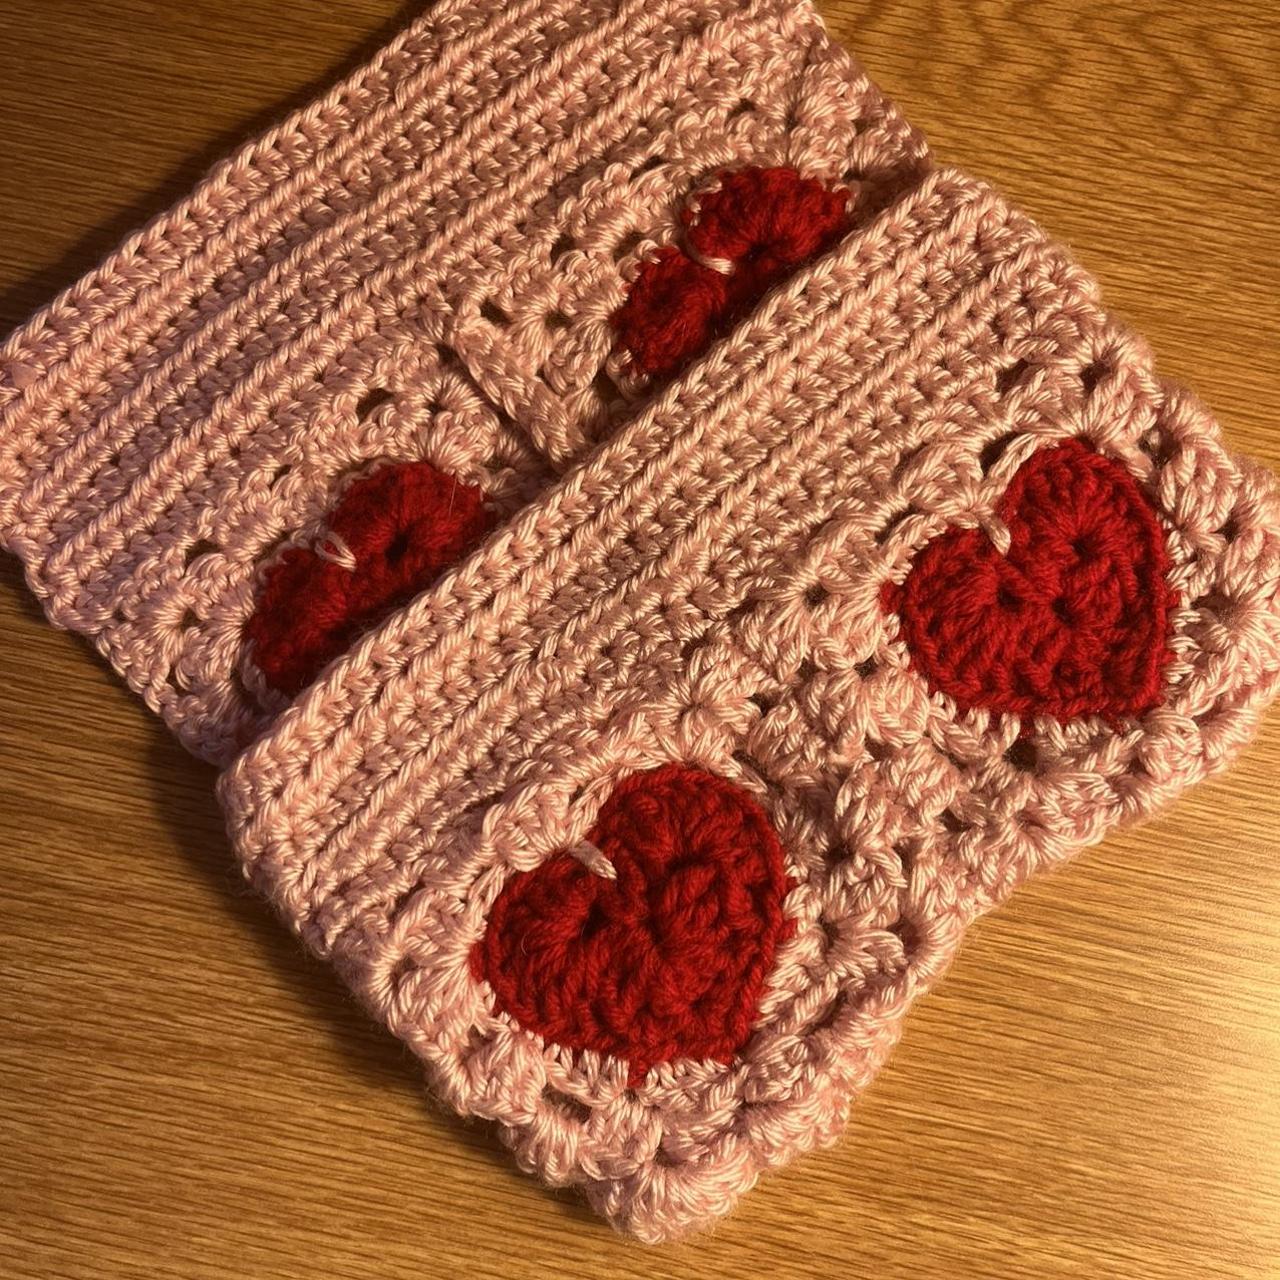 CROCHET PATTERN: Crochet Heart Book Sleeve Pattern, Crochet Heart